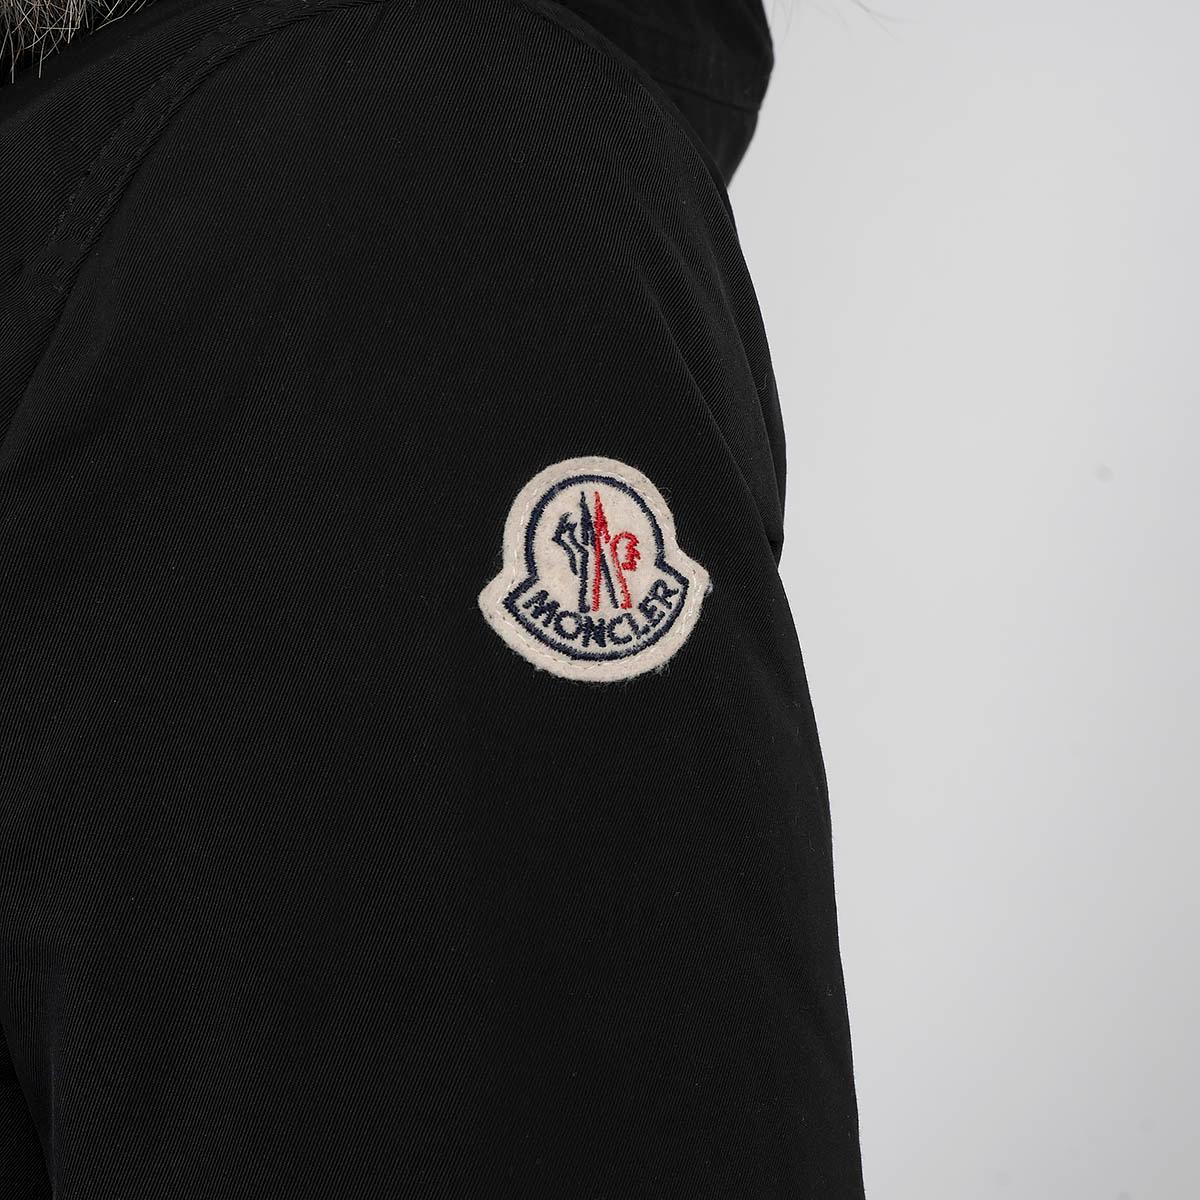 MONCLER black AREDHEL FUR TRIM DOWN PARKA Coat Jacket 2 M For Sale 2